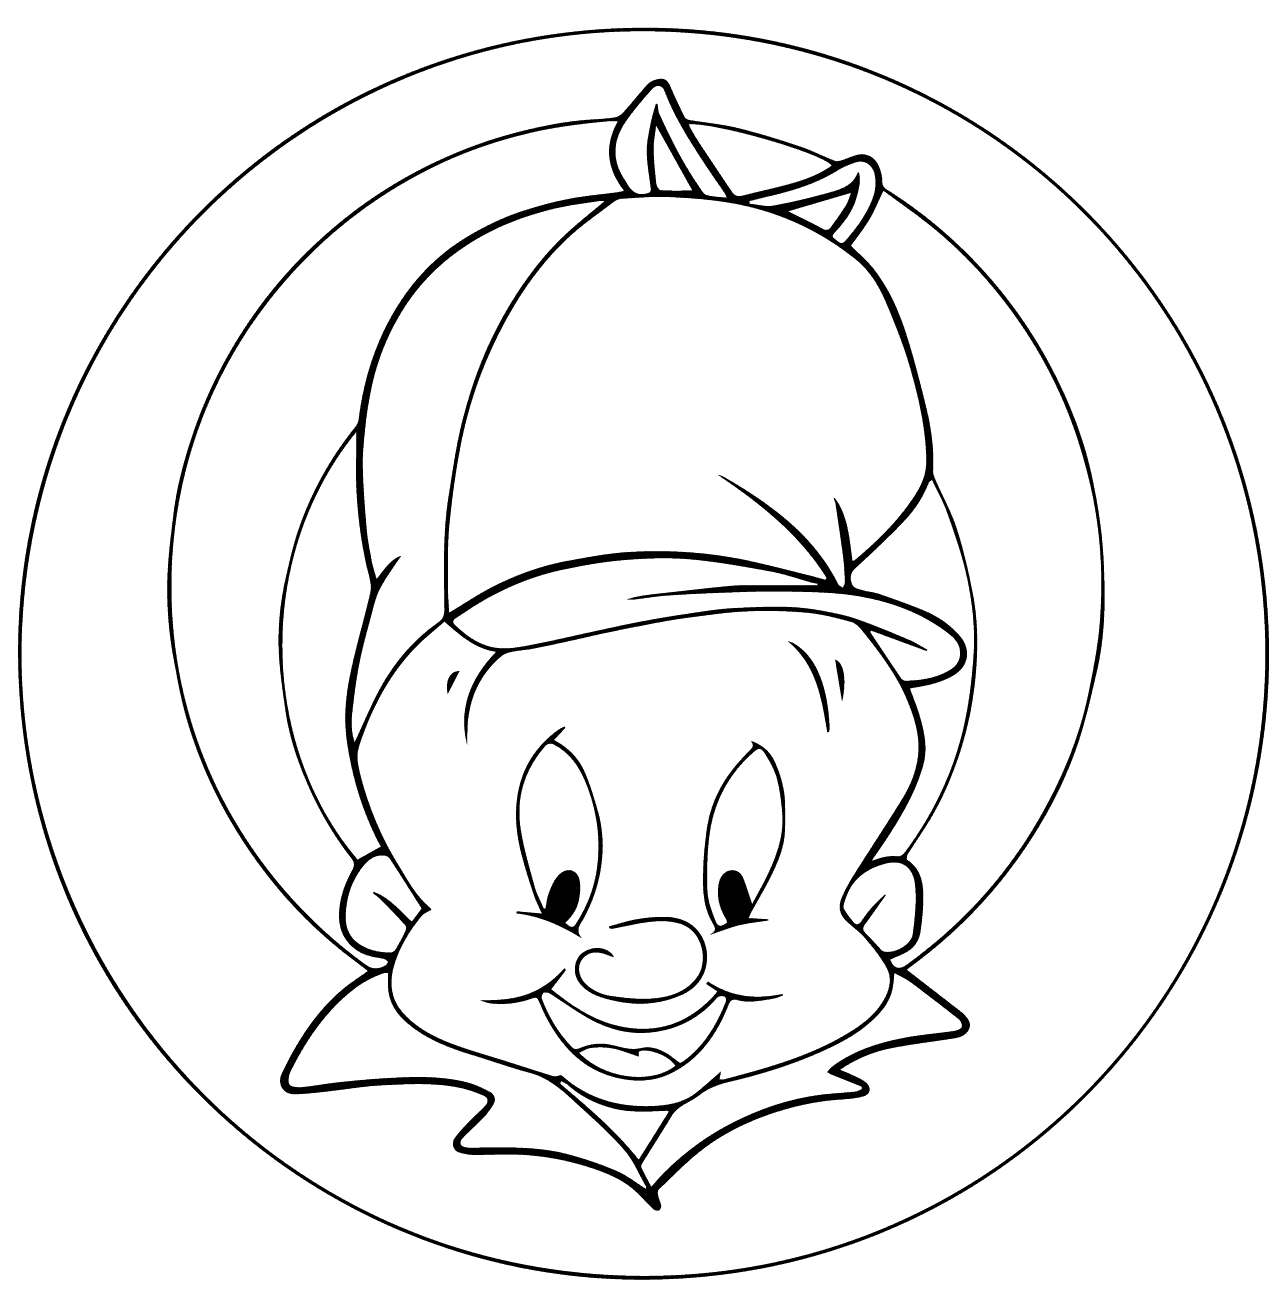 乐一通 (Looney Tunes) 角色中的埃尔默·福德 (Elmer Fudd)